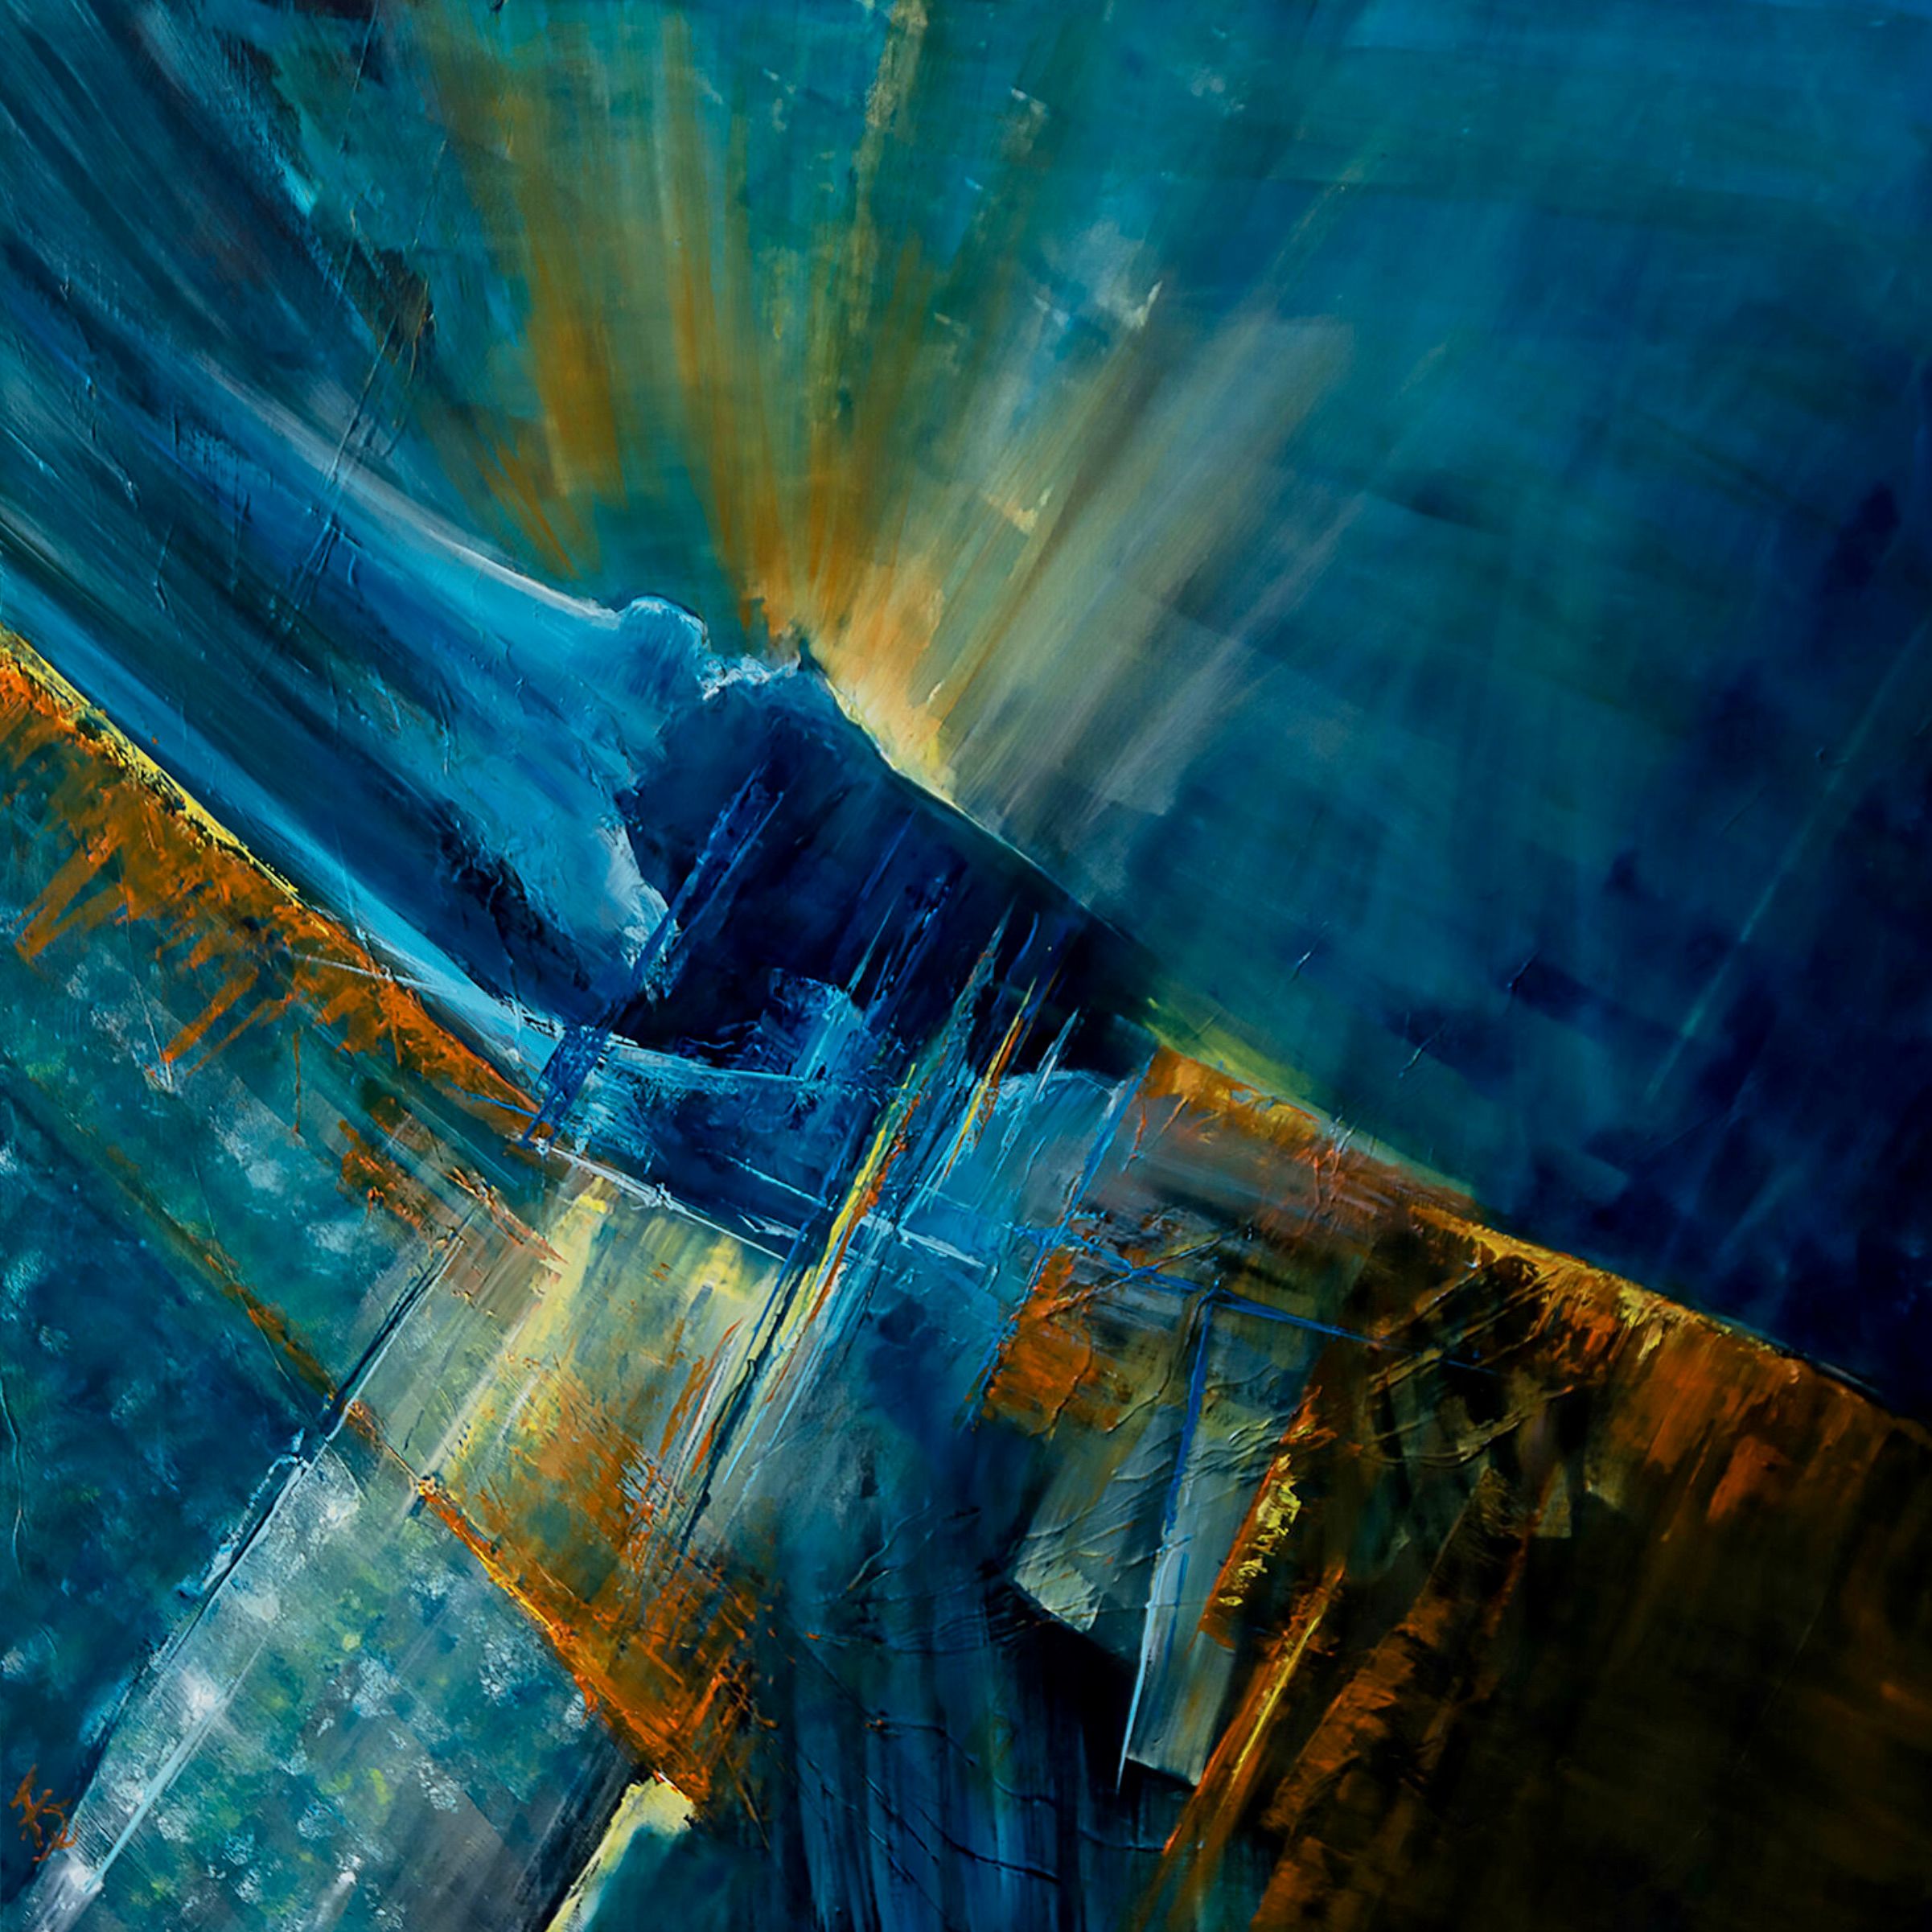 La pittura astratta "last-emergence" di Françoise Dugourd-Caput mostra l'astrazione o l'atmosfera di una visione spaziale... Ispirazione molto onirica dello spazio. Possiamo vedere l'emergere di una sorta di strano paesaggio dove la luce emerge dalle profondità dell'universo.